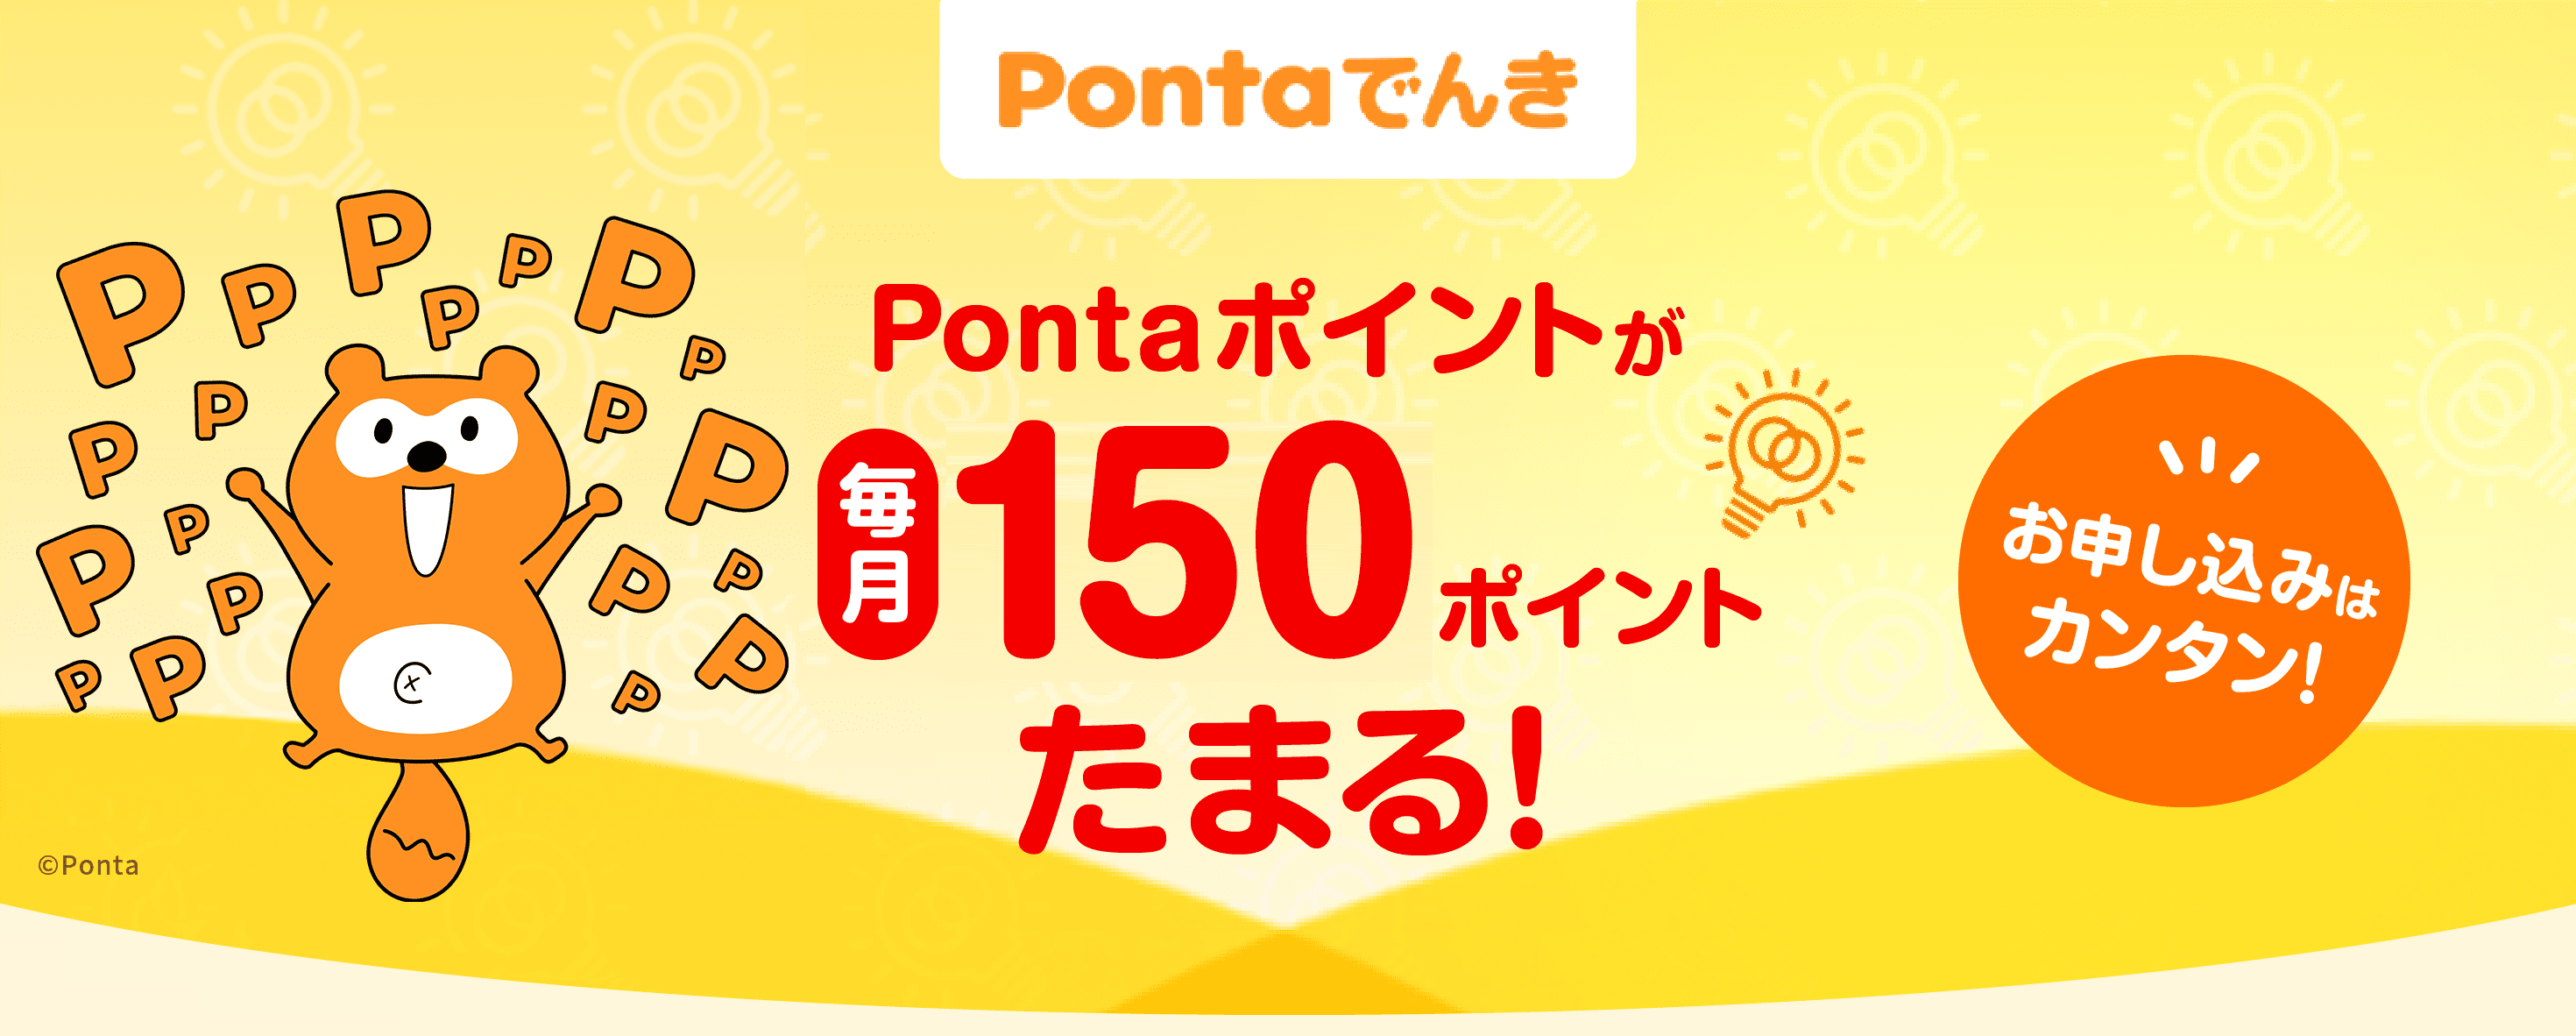 PontaでんきはPontaポイントが毎月300ポイントたまる!